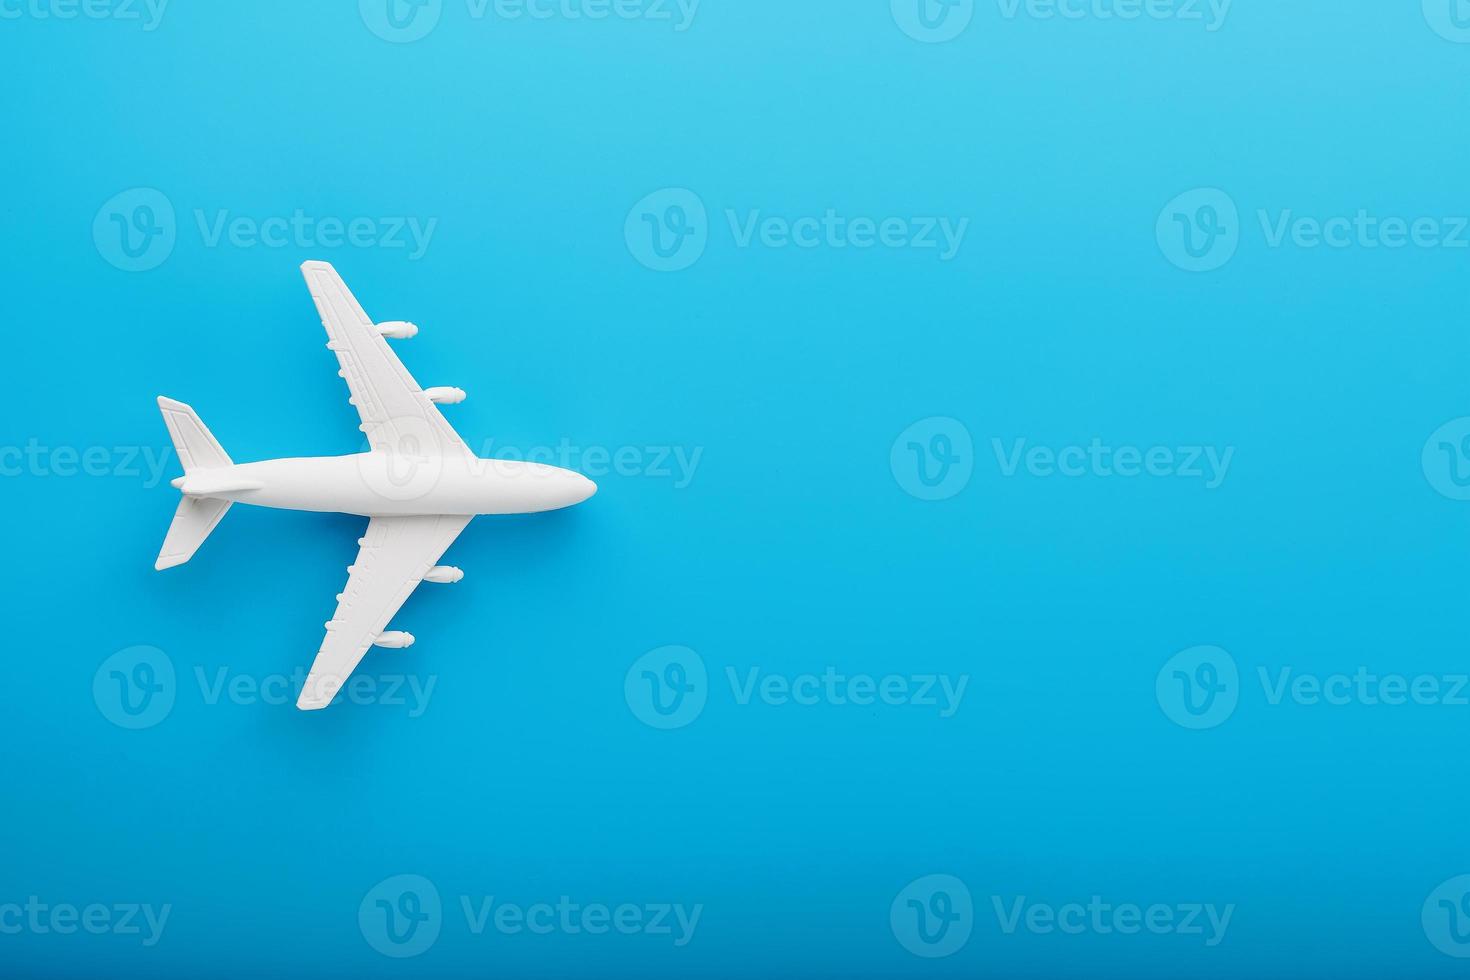 avión modelo de pasajeros sobre un fondo azul. espacio libre para texto. foto